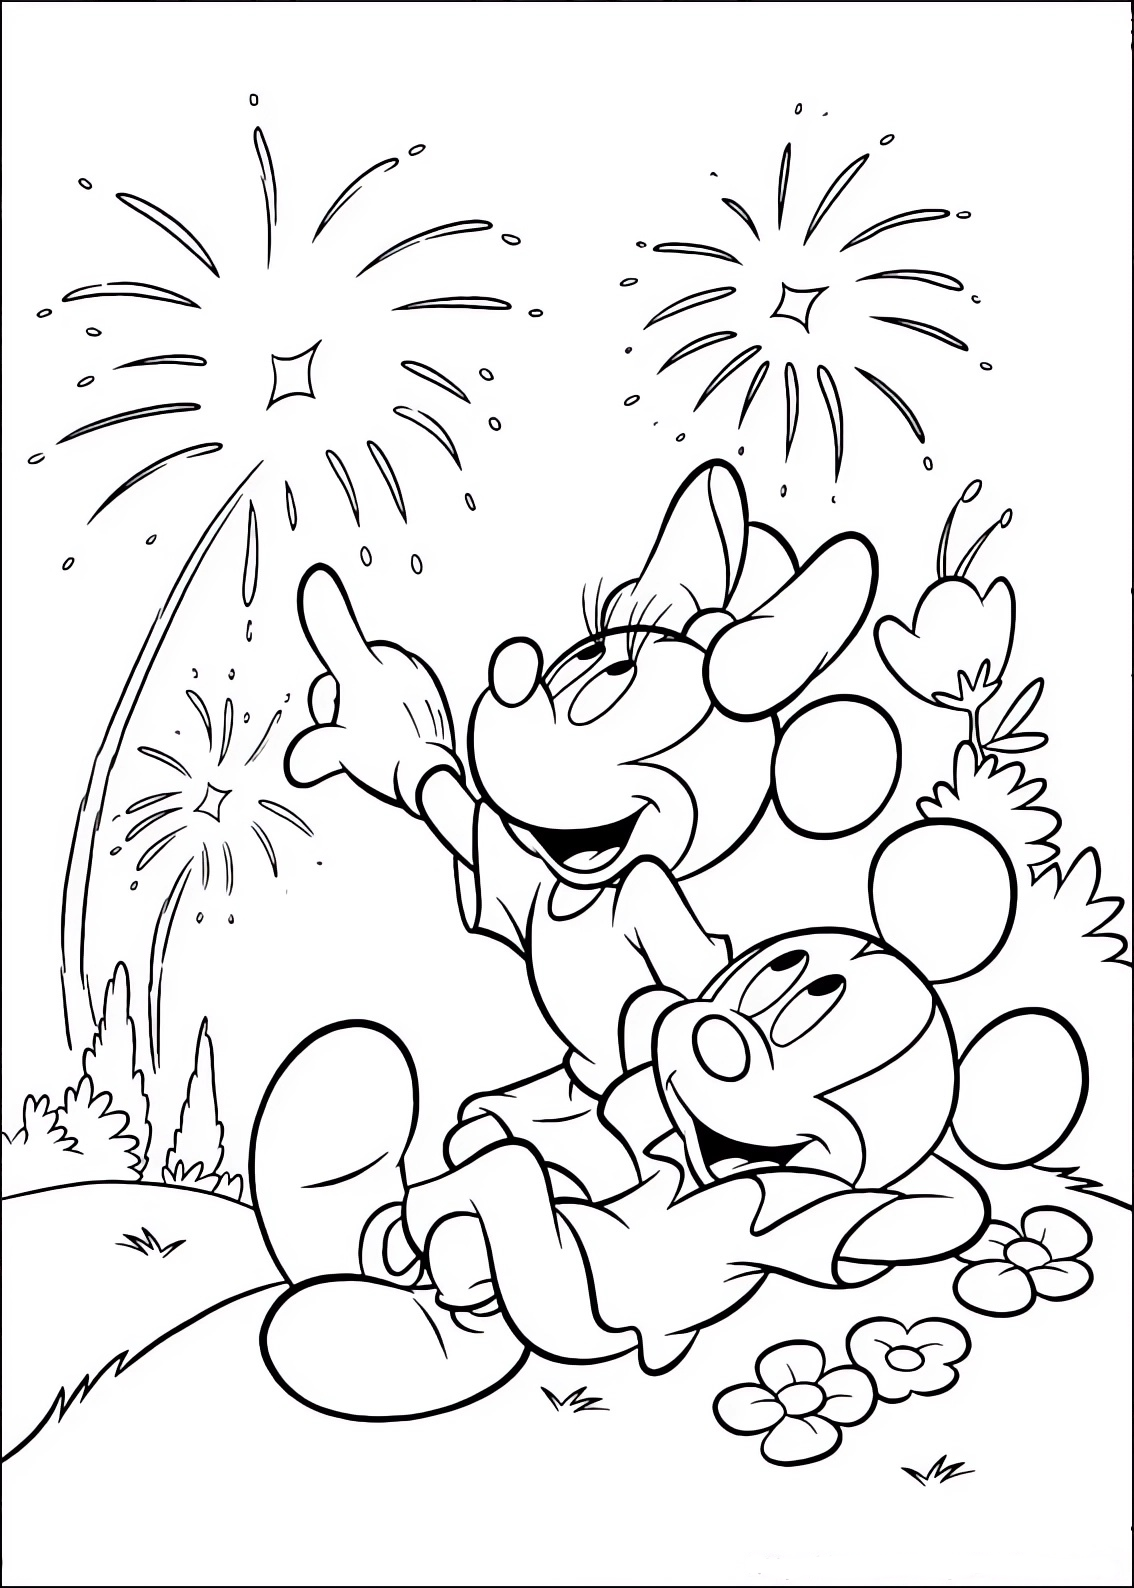 Disegno da colorare di Minnie e Topolino (Mickey Mouse) che guardano i fuochi d'artificio